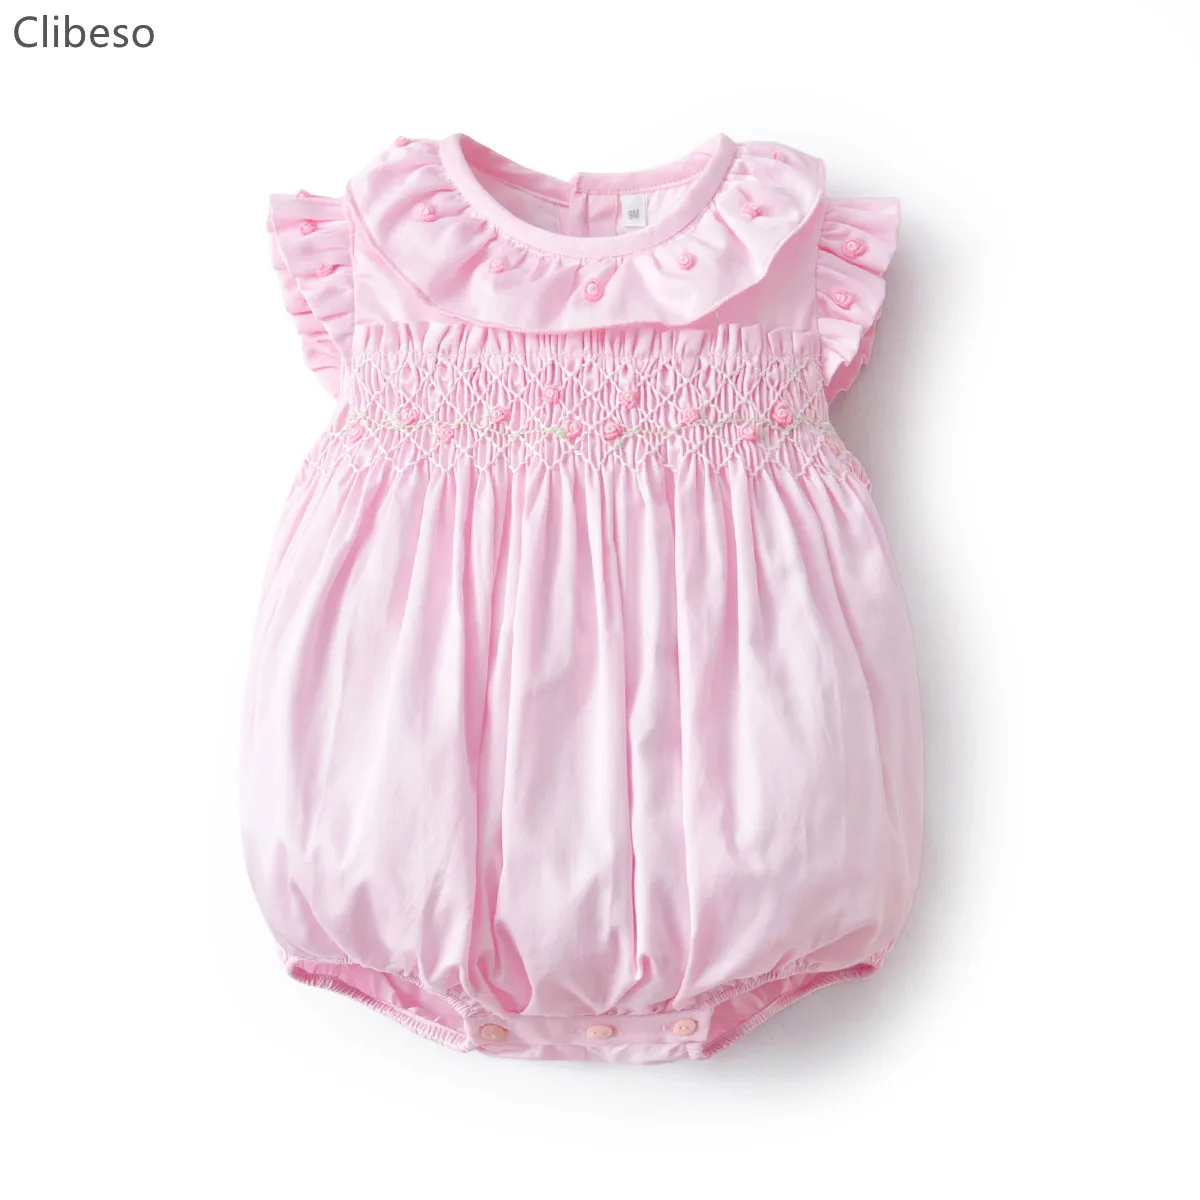 New Baby Girl pagliaccetti Smocked fatti a mano neonato Smocking bolle rosa con fiori ricamati Baby Smock tute di cotone vestiti